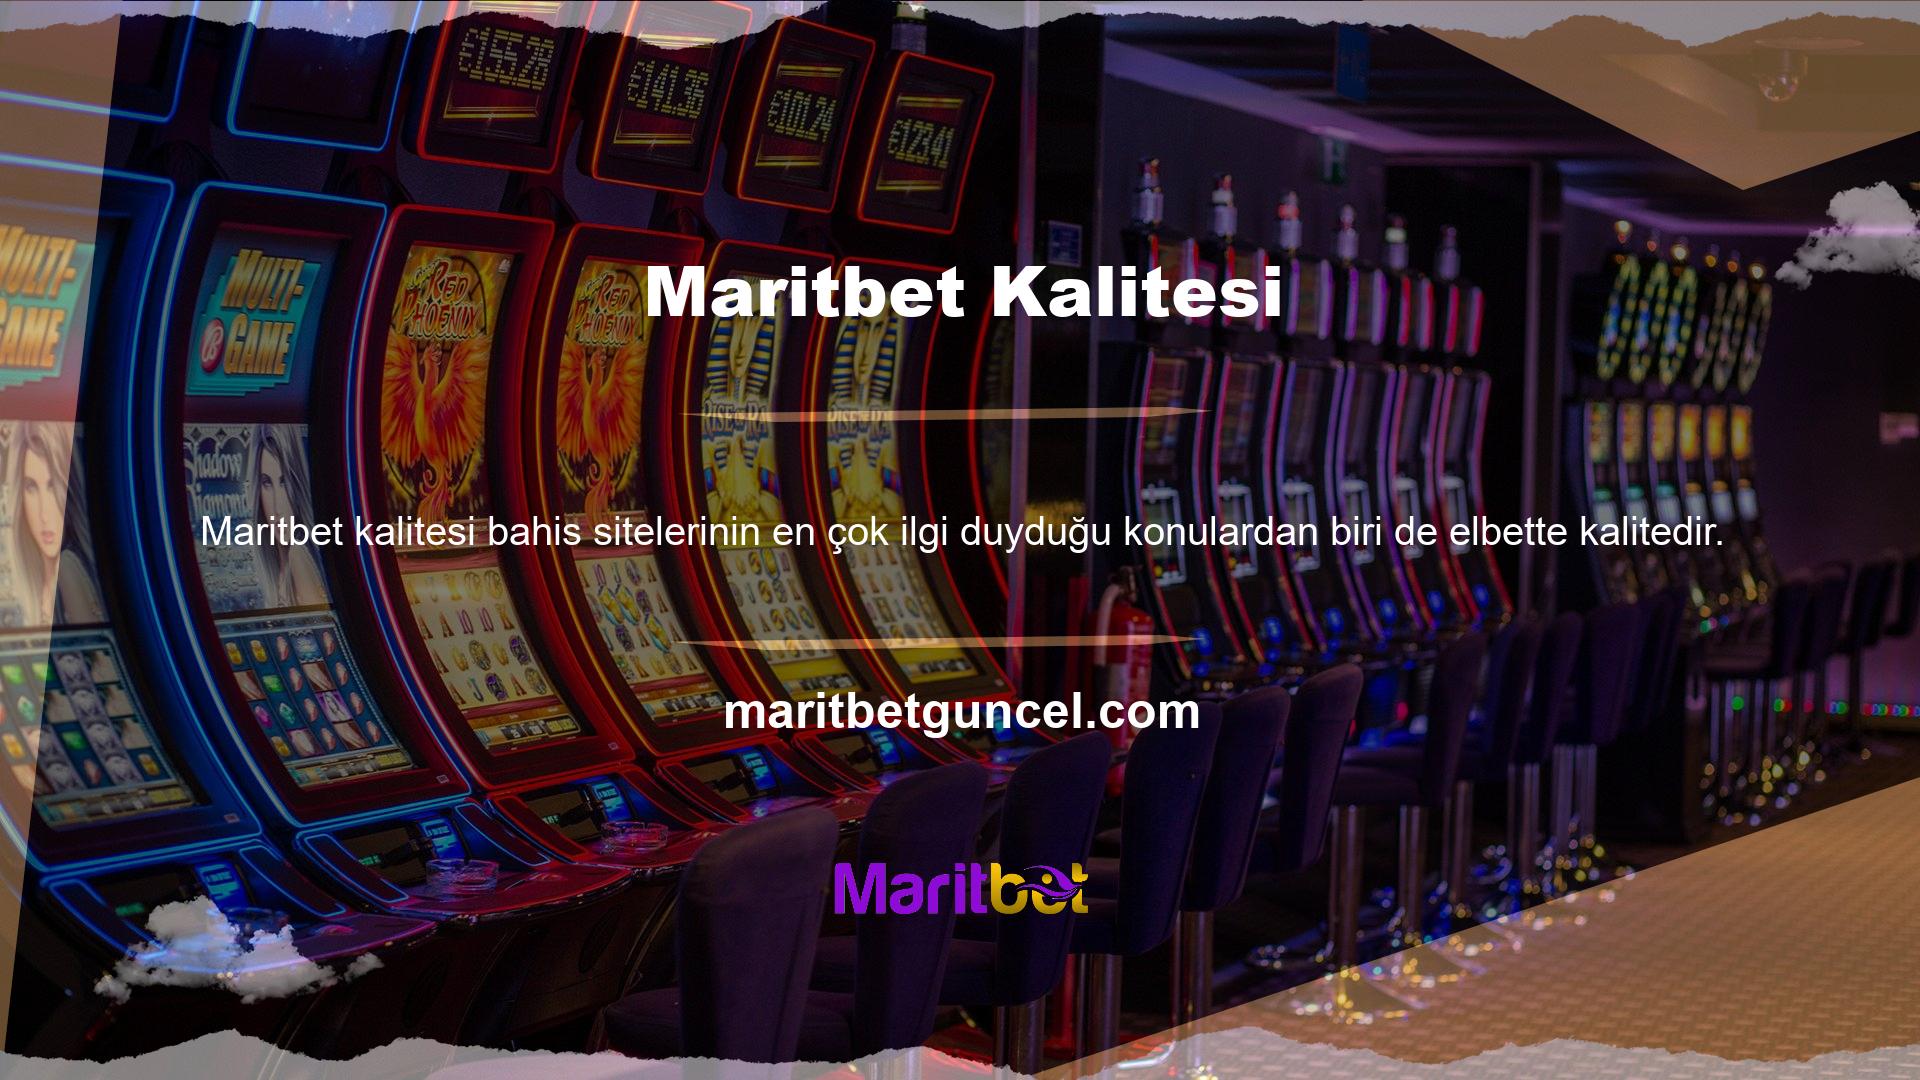 Maritbet hem spor bahislerinde hem de casino oyunlarında kalitesini kanıtlamış bir isimdir